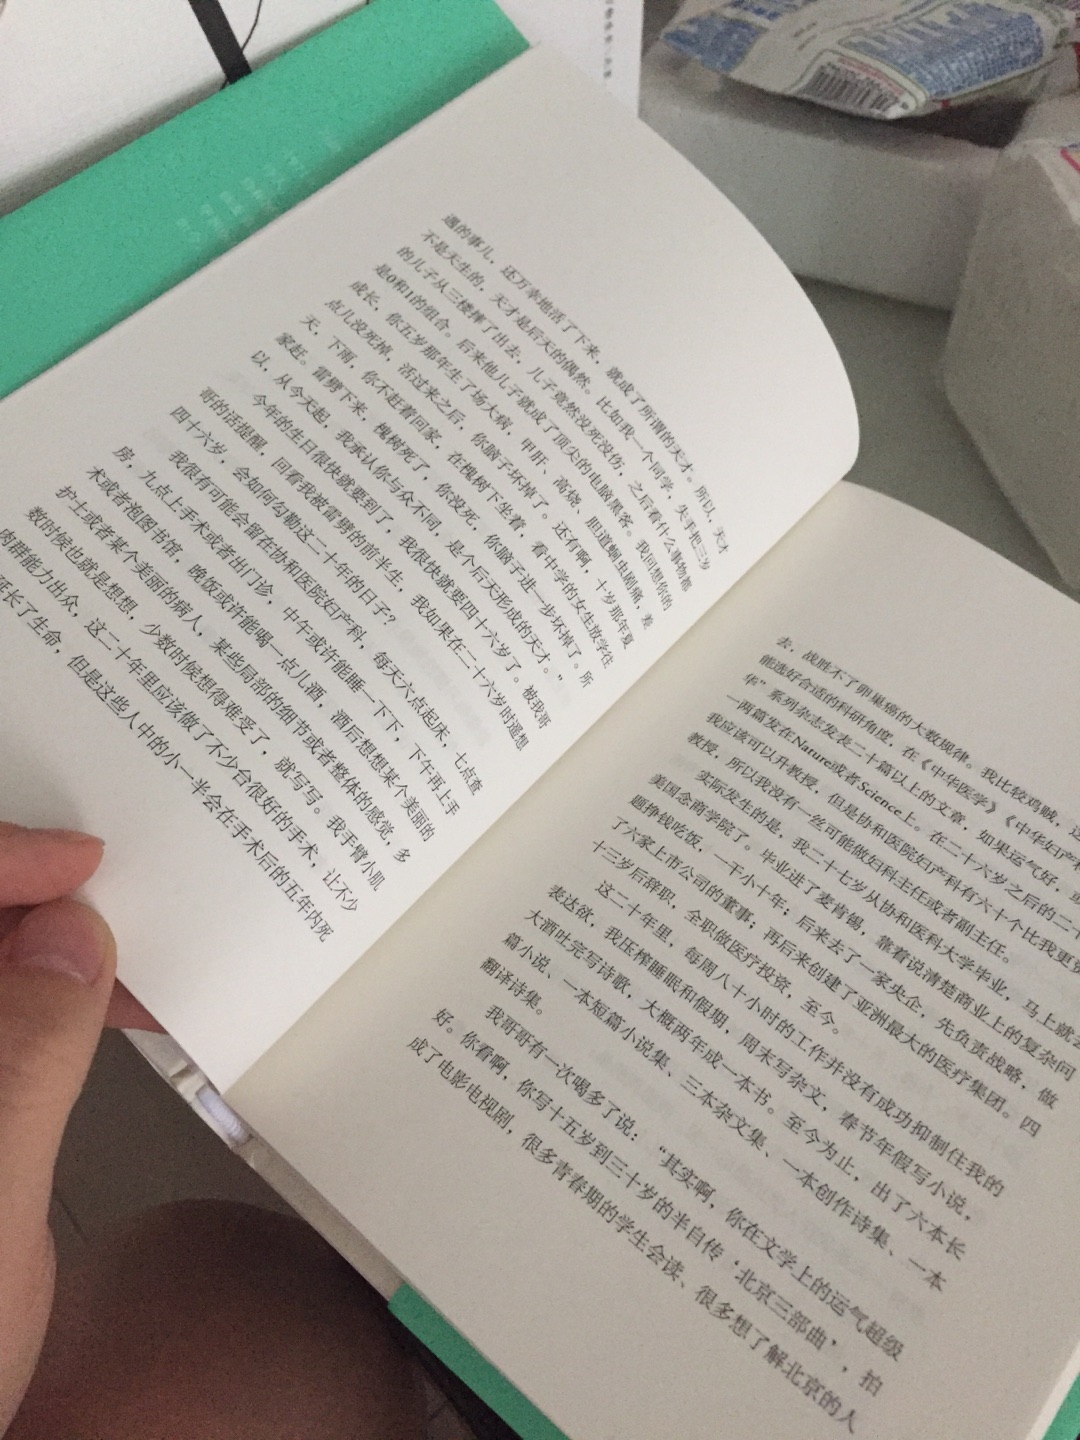 书收到，很棒，手感很好，纸质舒服，一直时不时听到几句冯唐的经典语录，第一次真正看冯唐的作品，期待